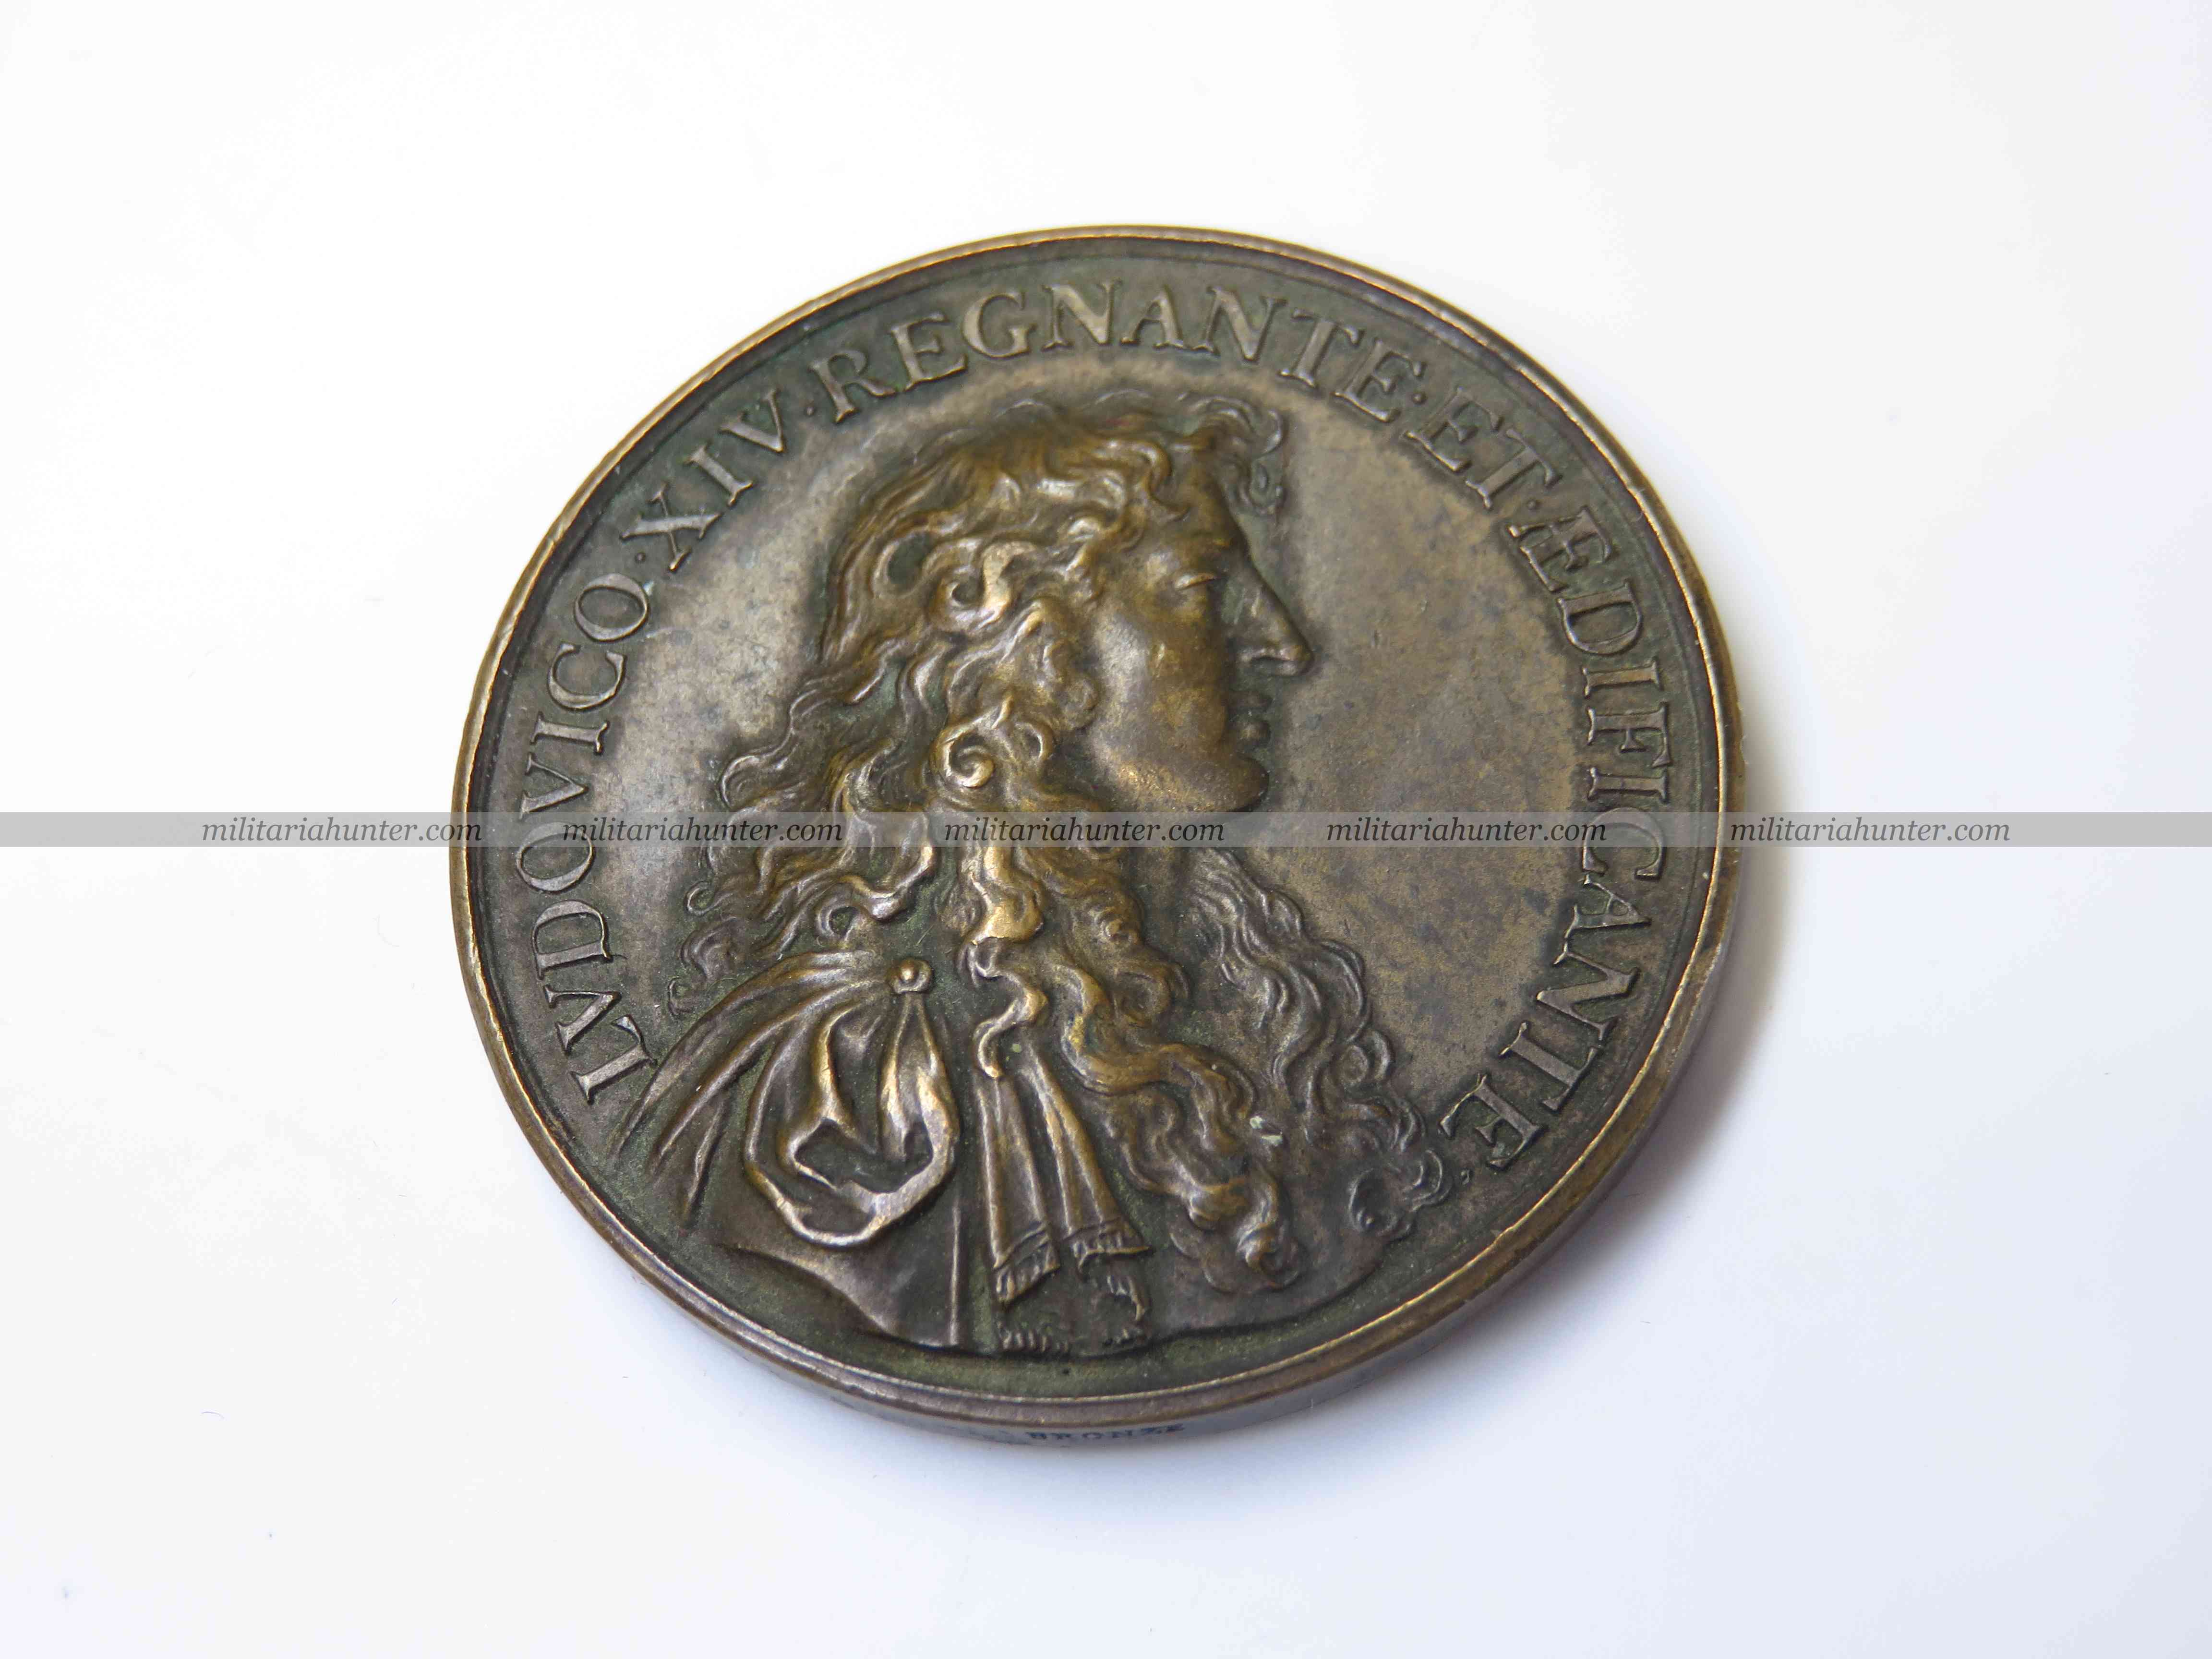 Militaria Hunter   Achat Vente Estimation Militaria ww1 ww2 Médaille bronze Louis XIV - Observatoire de Paris 1667 - frappe XIXe